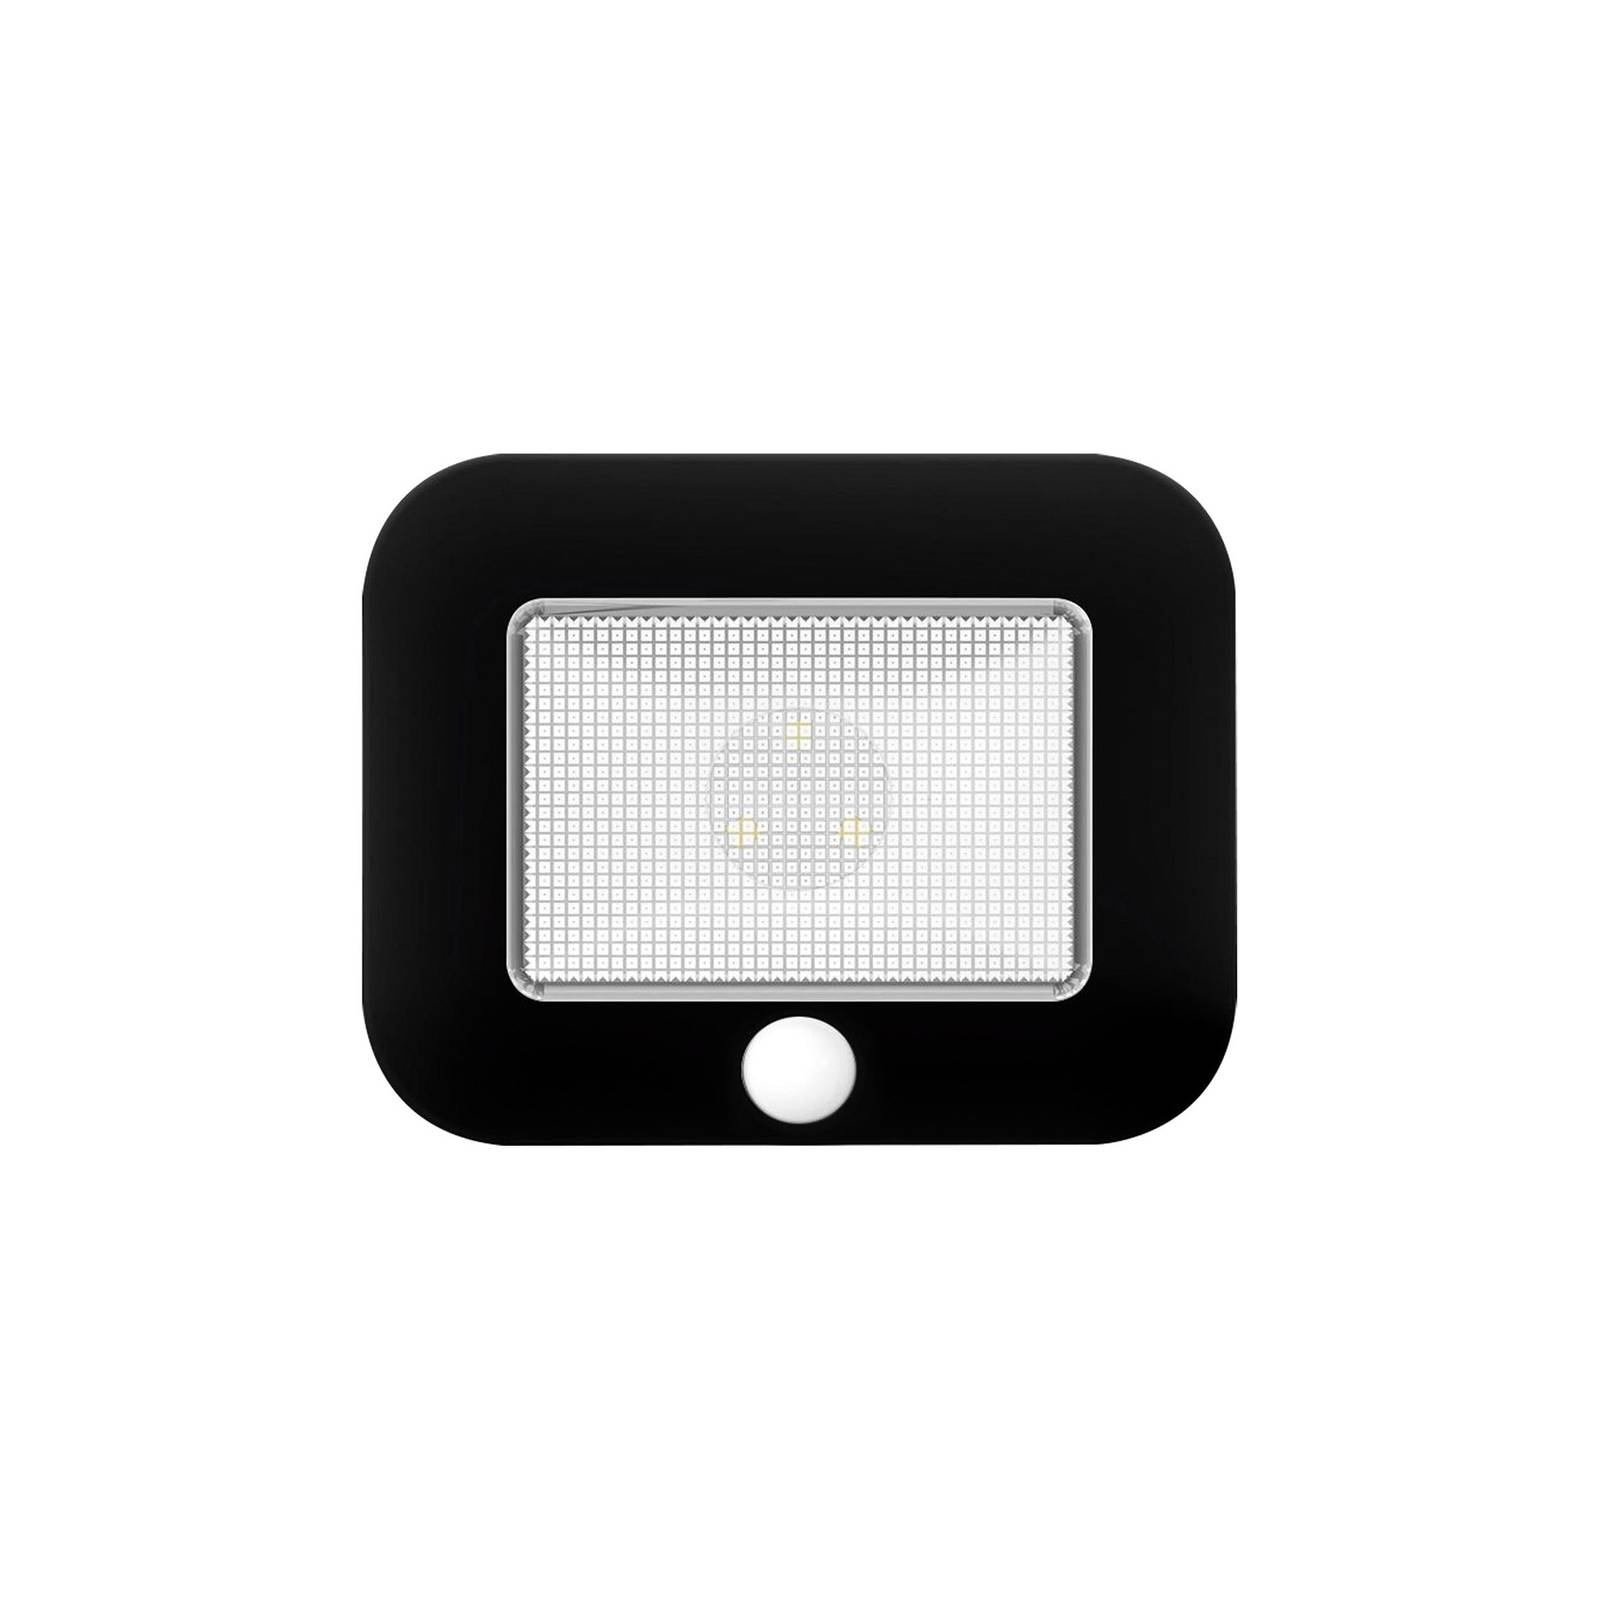 Mobina Sensor 10 LED pult alatti világítás, fekete